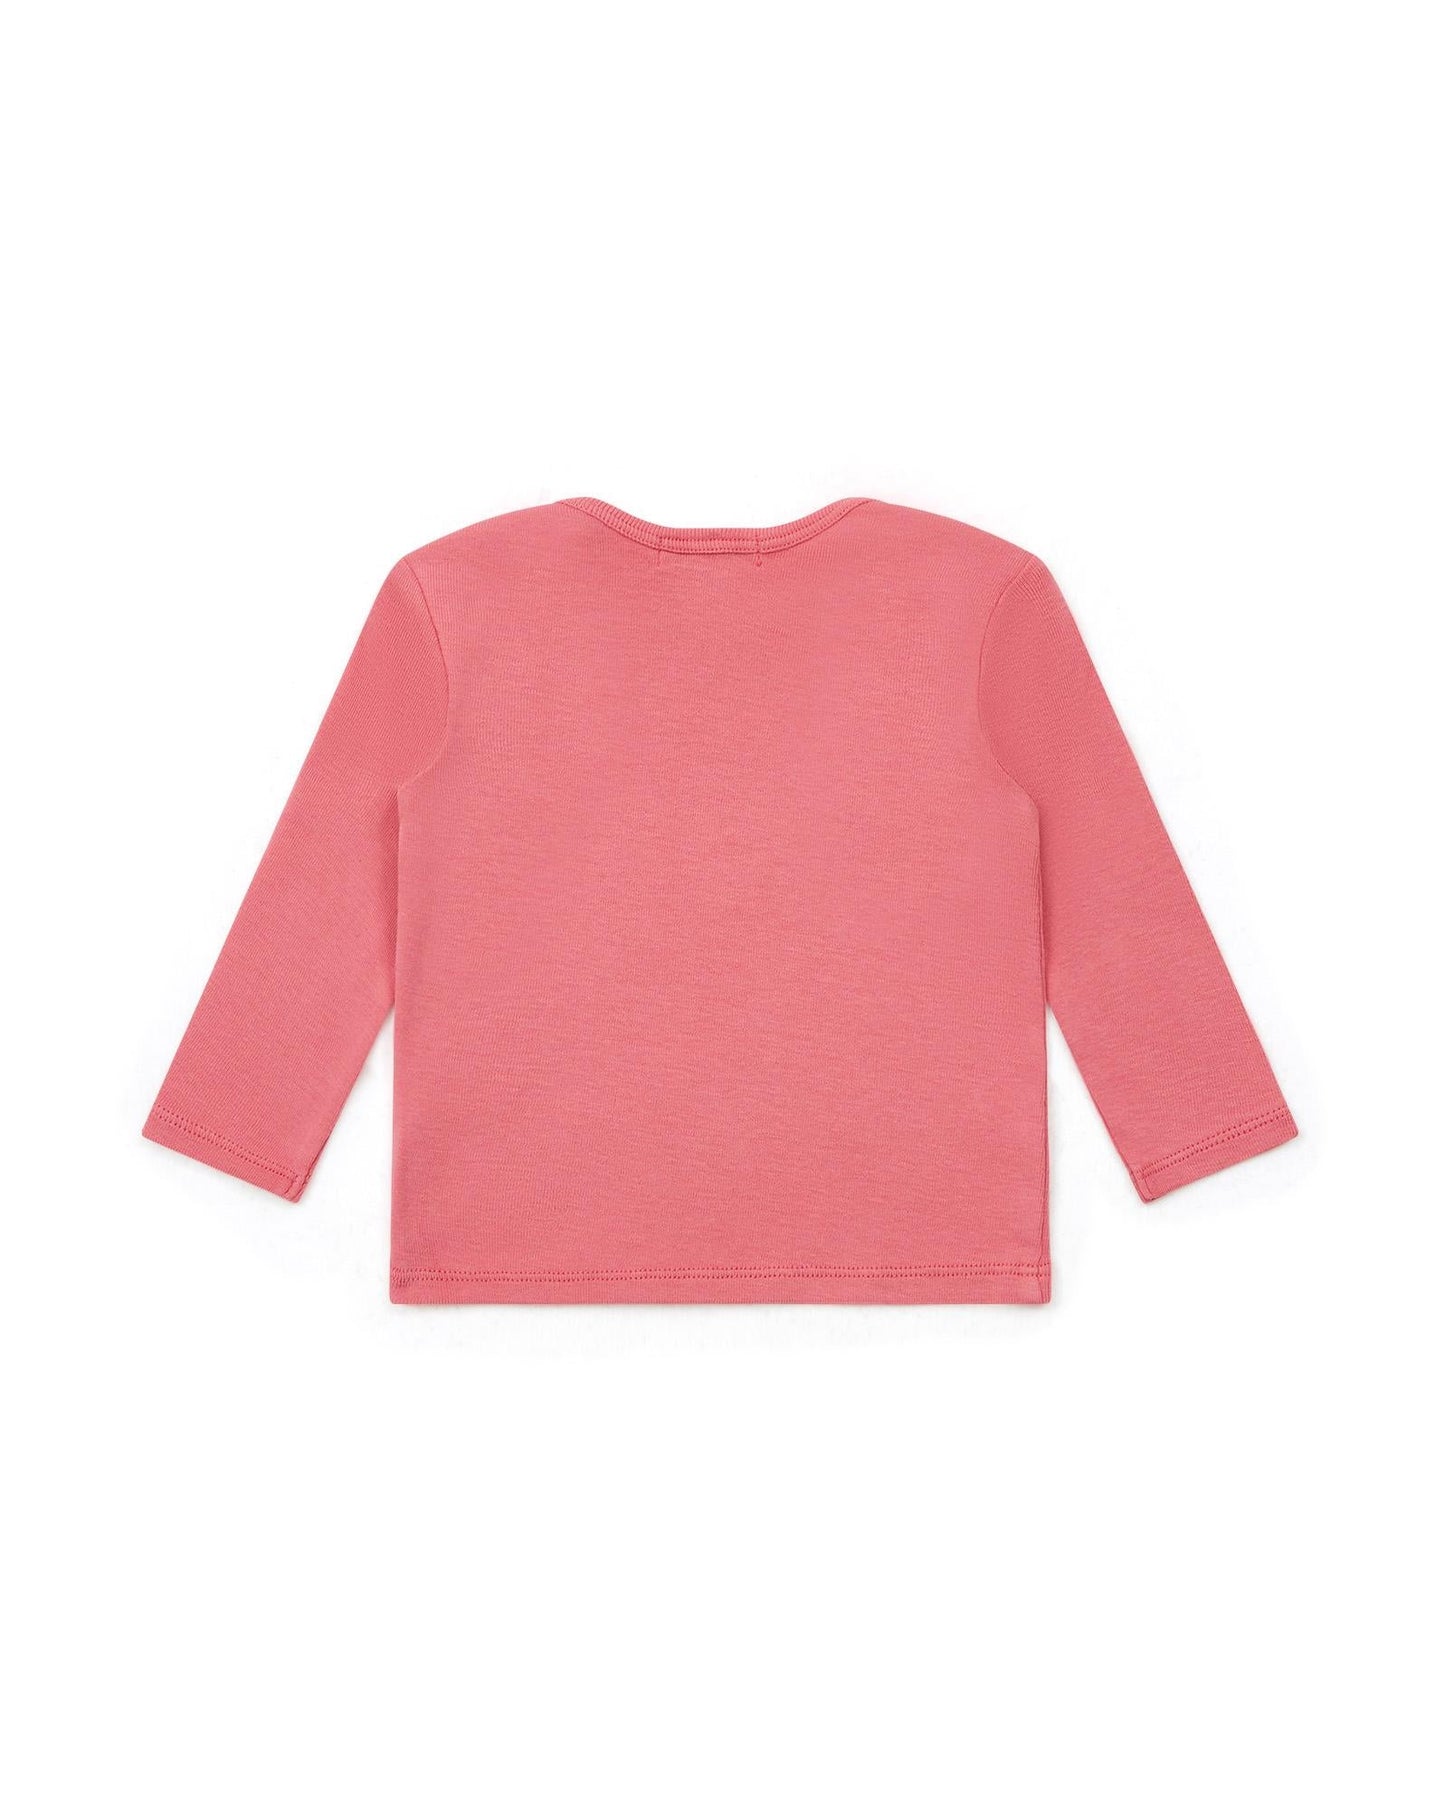 T-shirt - Tina Pink Baby ML 100% organic cotton